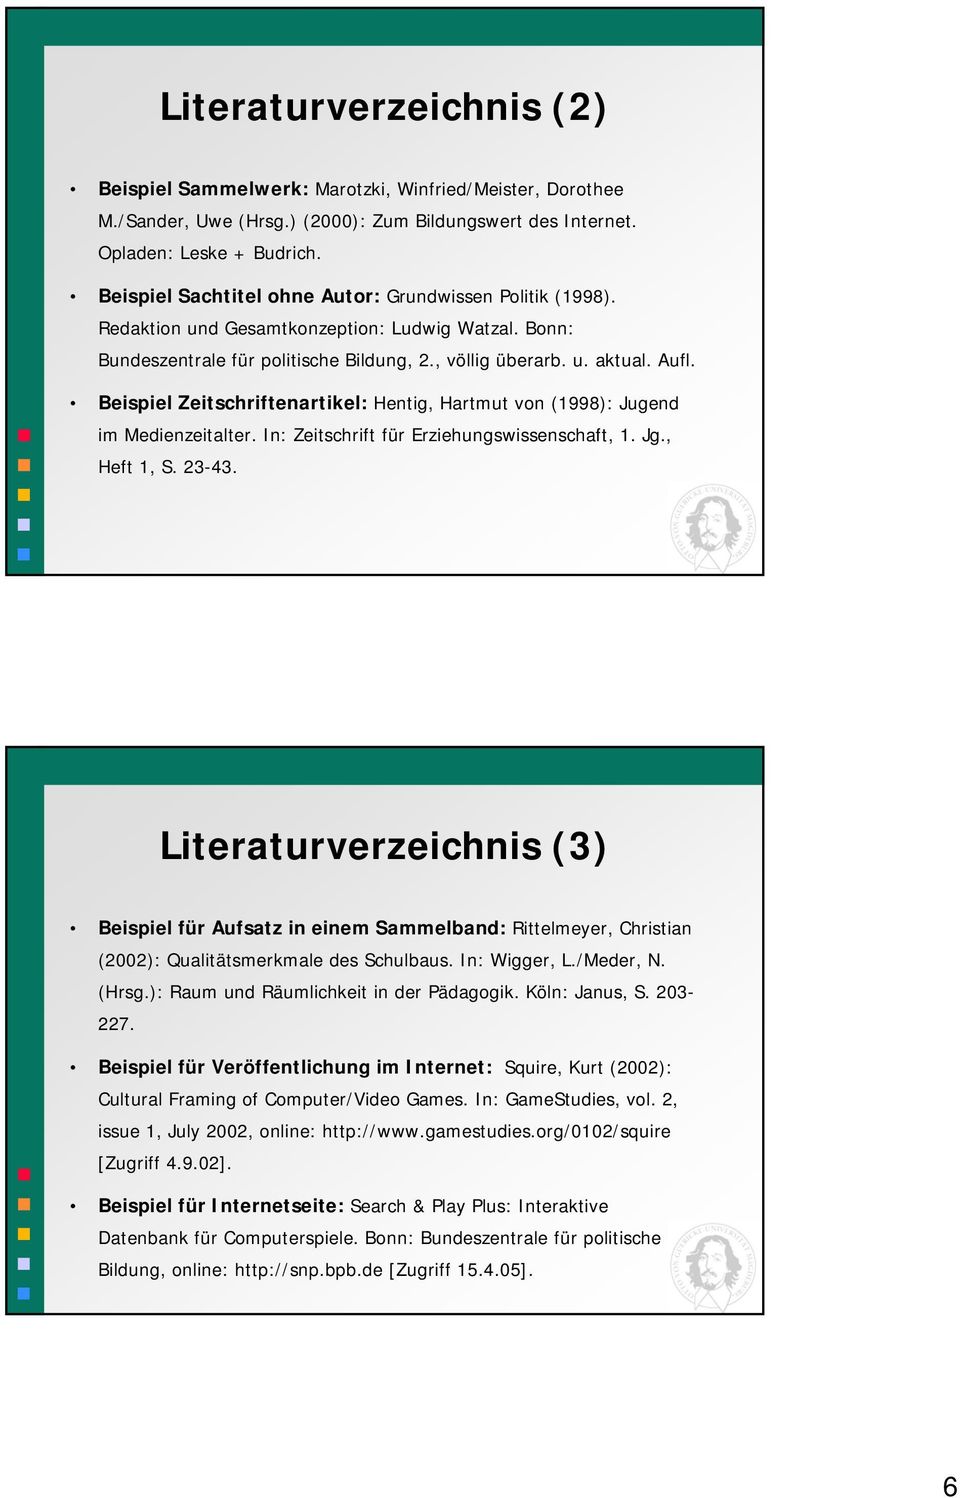 Beispiel Zeitschriftenartikel: Hentig, Hartmut von (1998): Jugend im Medienzeitalter. In: Zeitschrift für Erziehungswissenschaft, 1. Jg., Heft 1, S. 23-43.